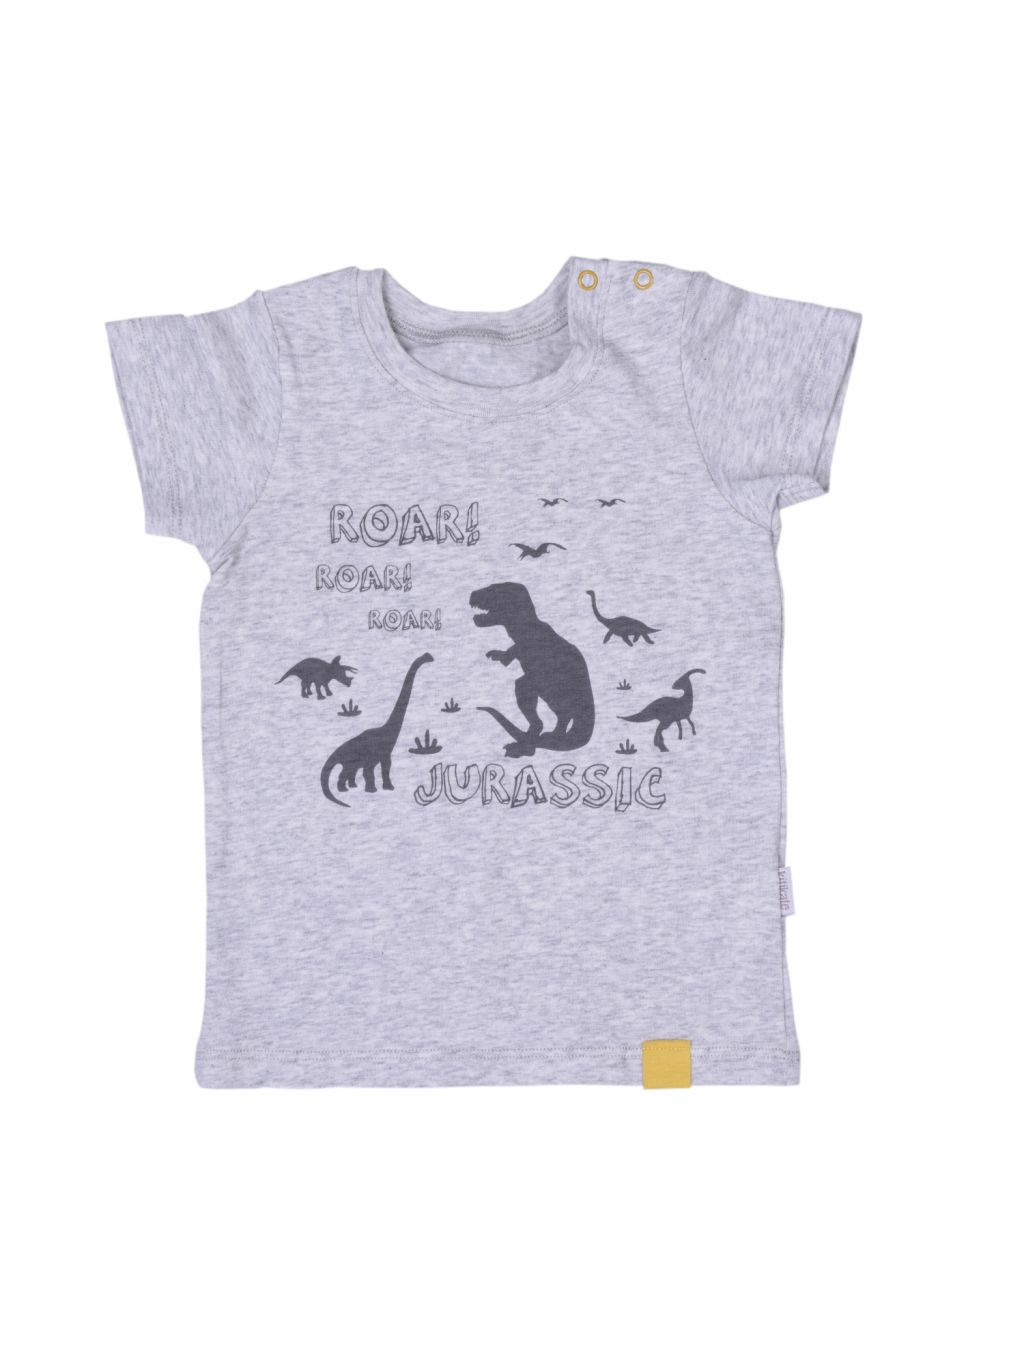 Tričko s krátkým rukávem Dinosauři_S85846 (Barva & Vzor MENTOLOVÁ, Velikost 12 - 18 MĚSÍCŮ)